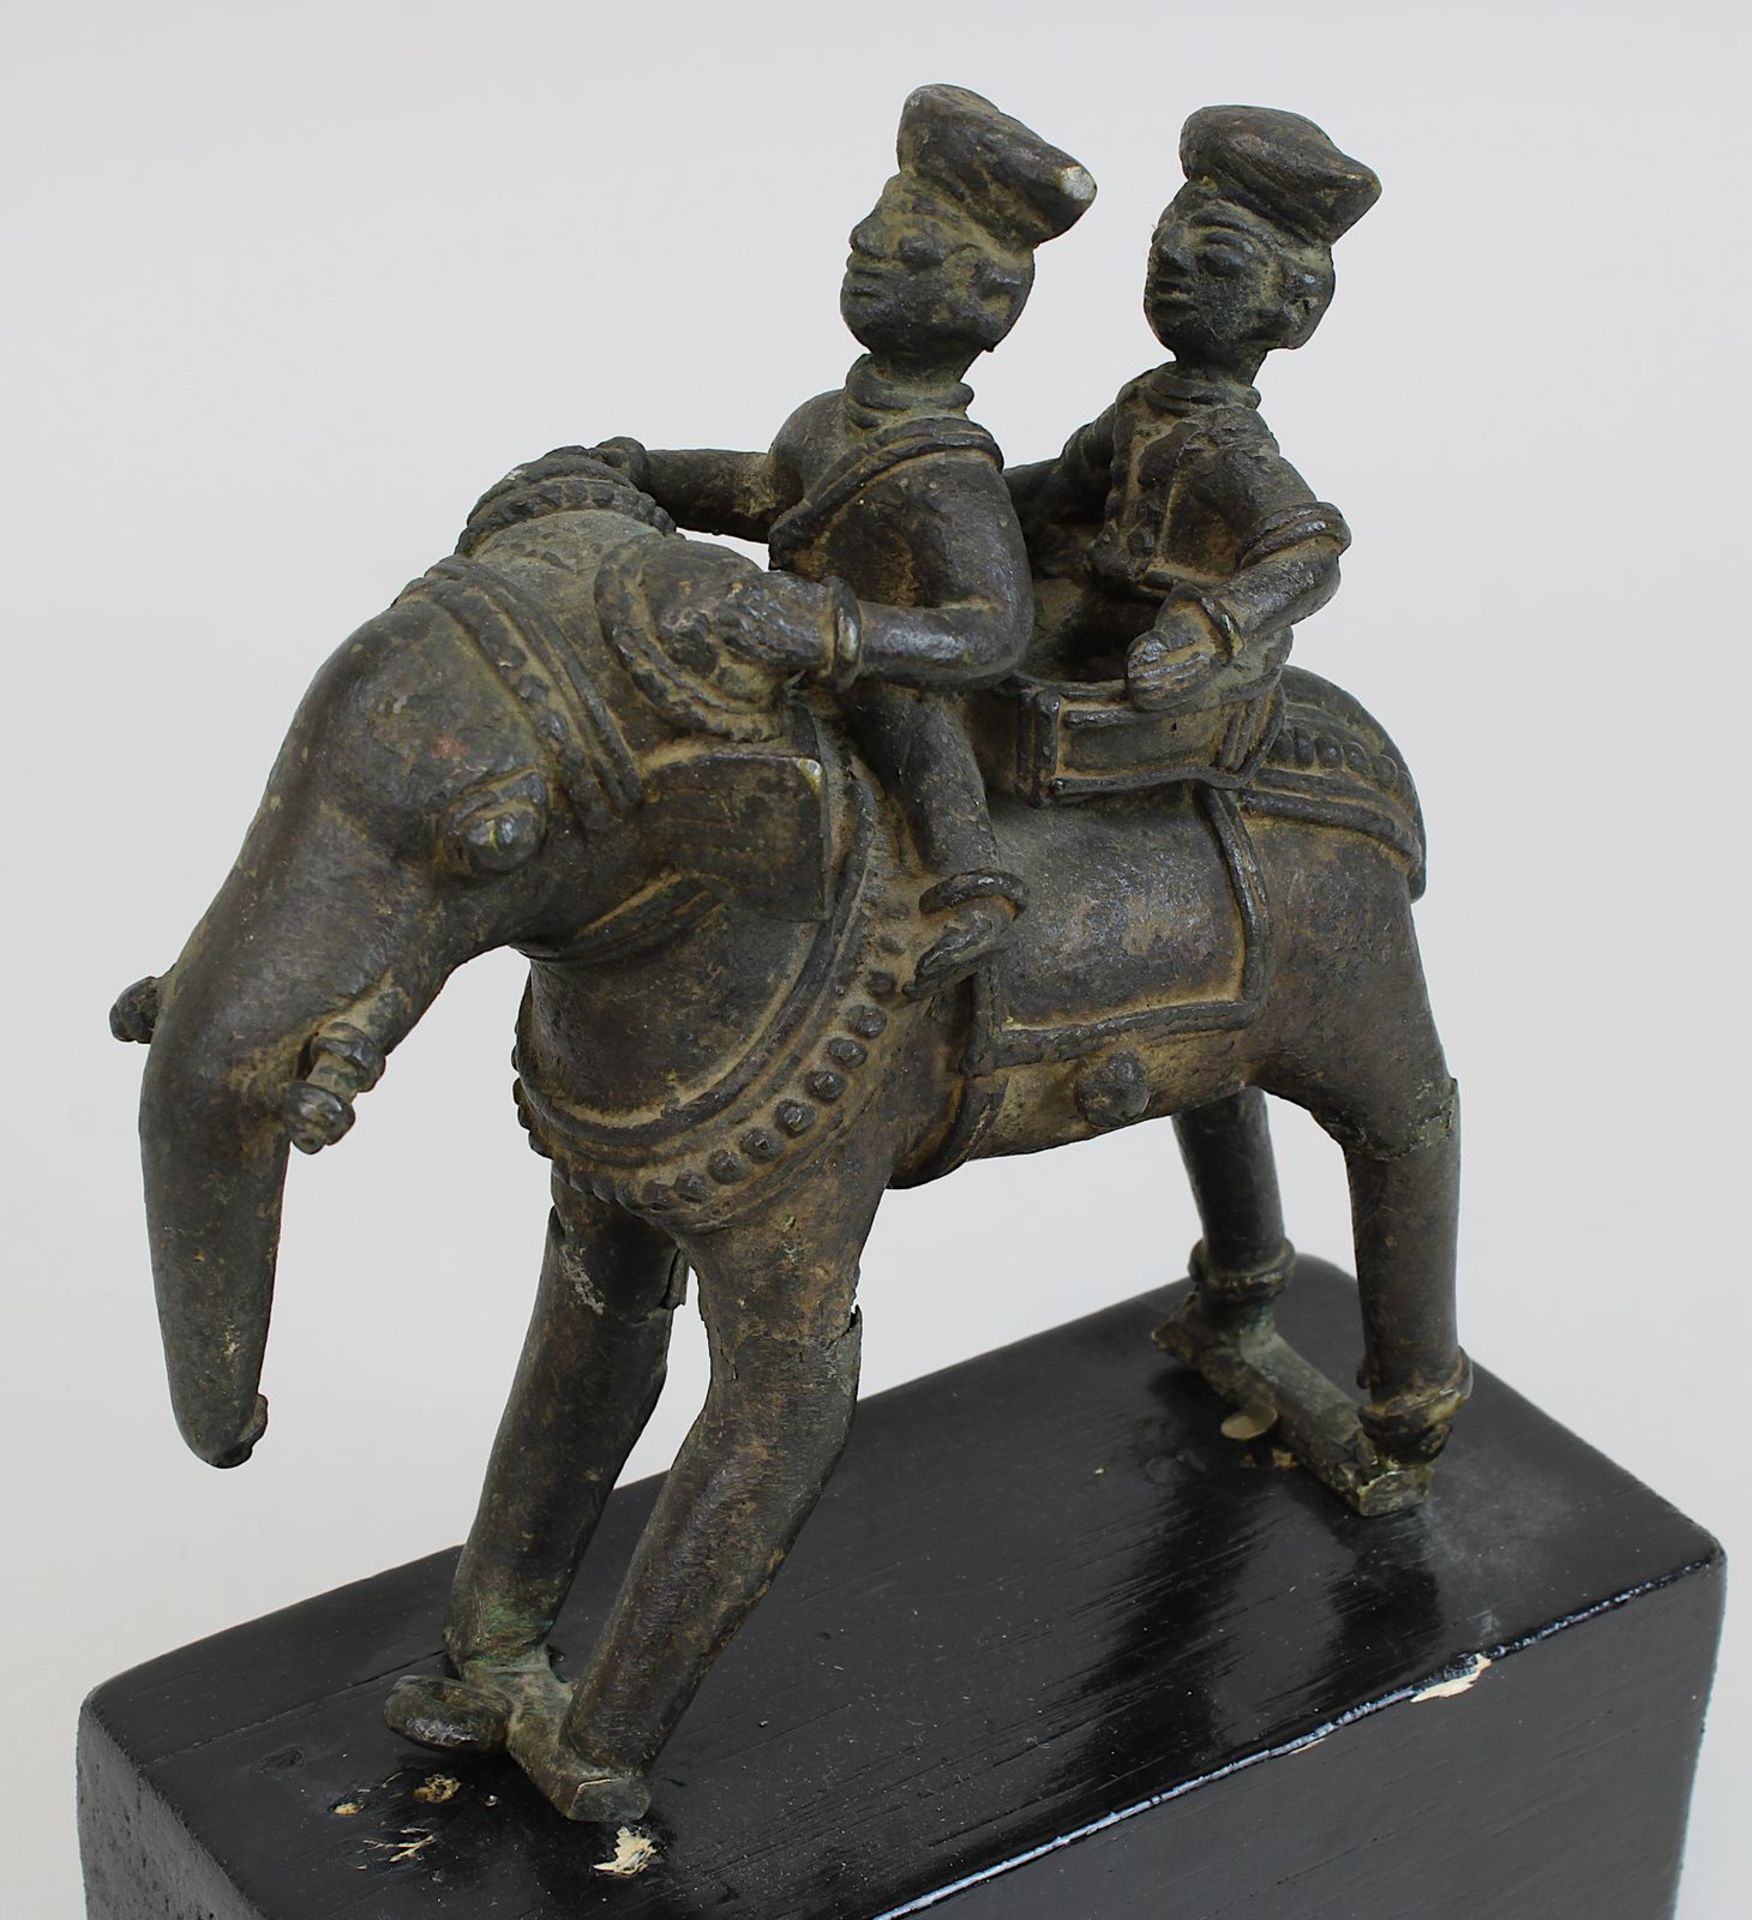 Elefanten-Figur mit 2 Reitern, Rajasthan/Indien, Bronze in der verlorenen Form gegossen, schöne - Bild 2 aus 2